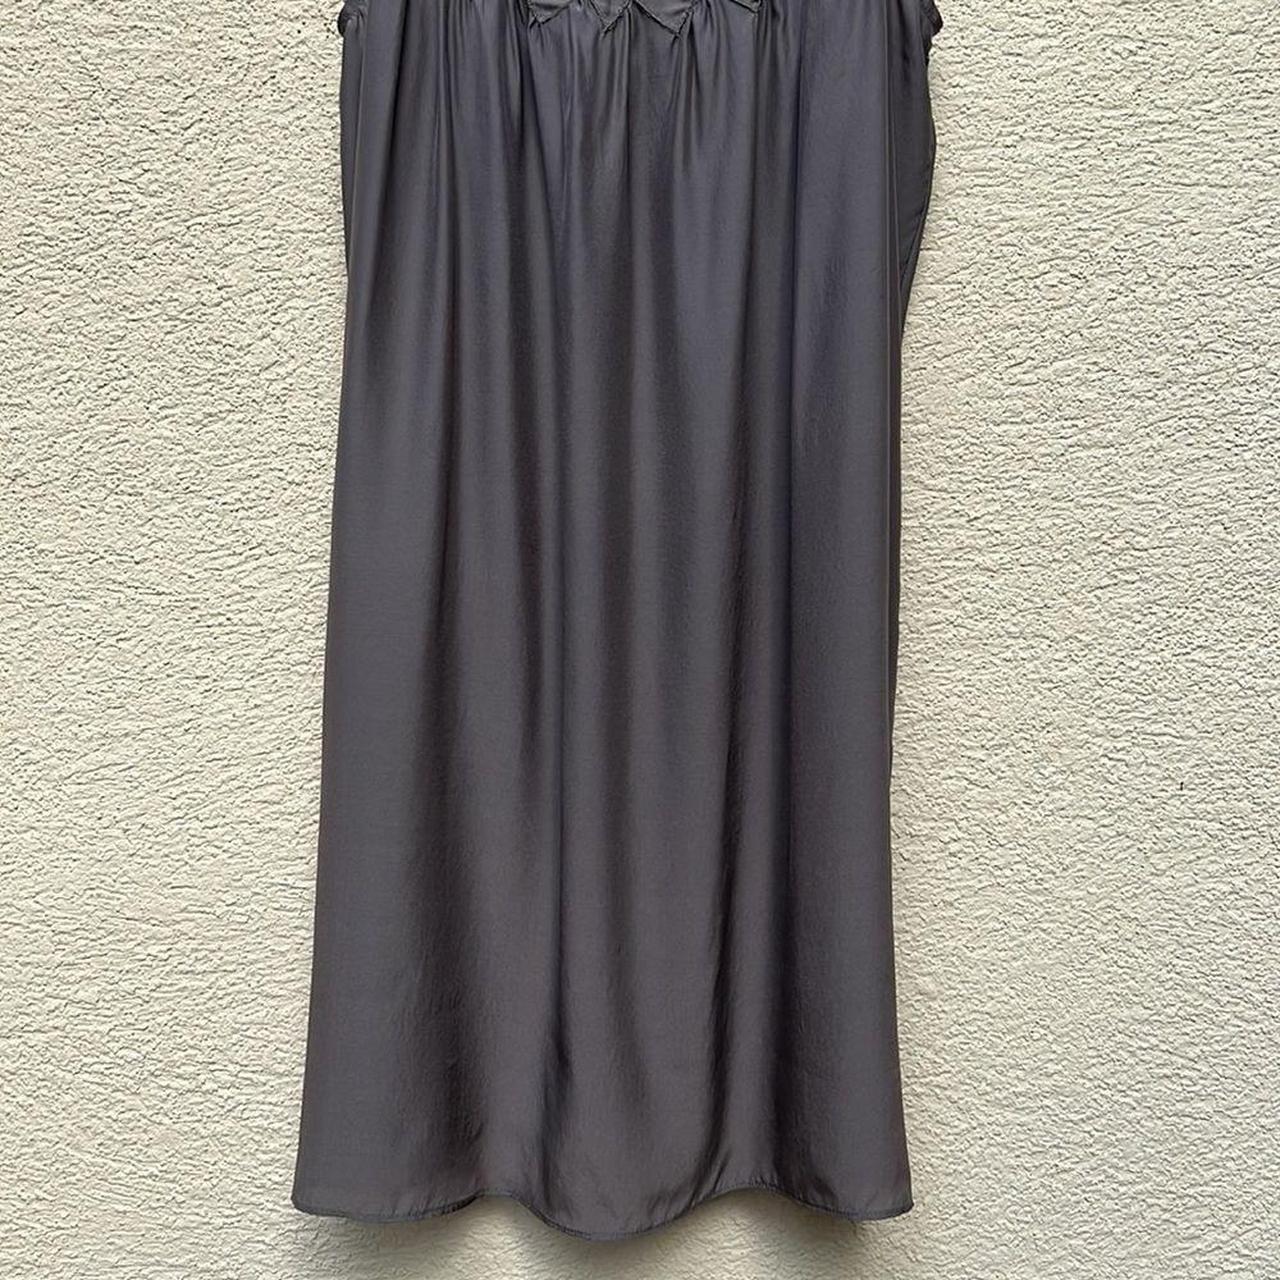 Product Image 4 - IRO 100% silk dress size